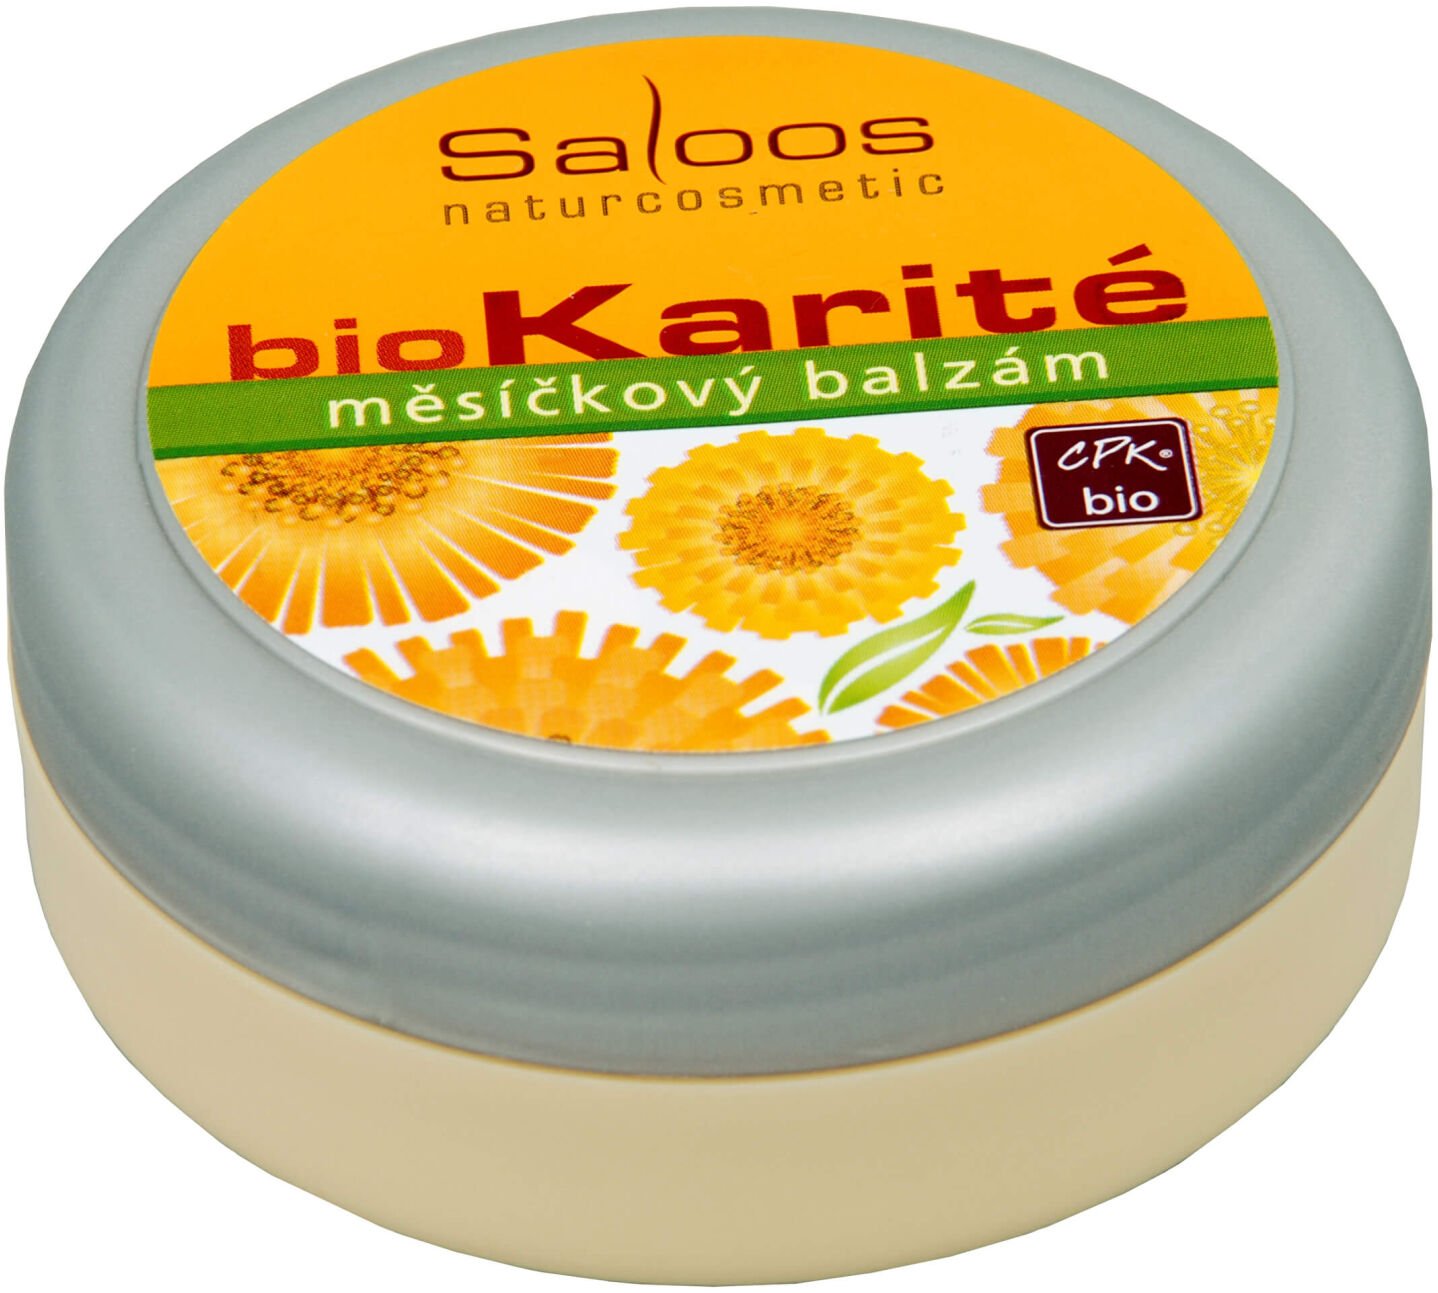 Saloos Bio Karité balzam - Nechtíkový 50 ml